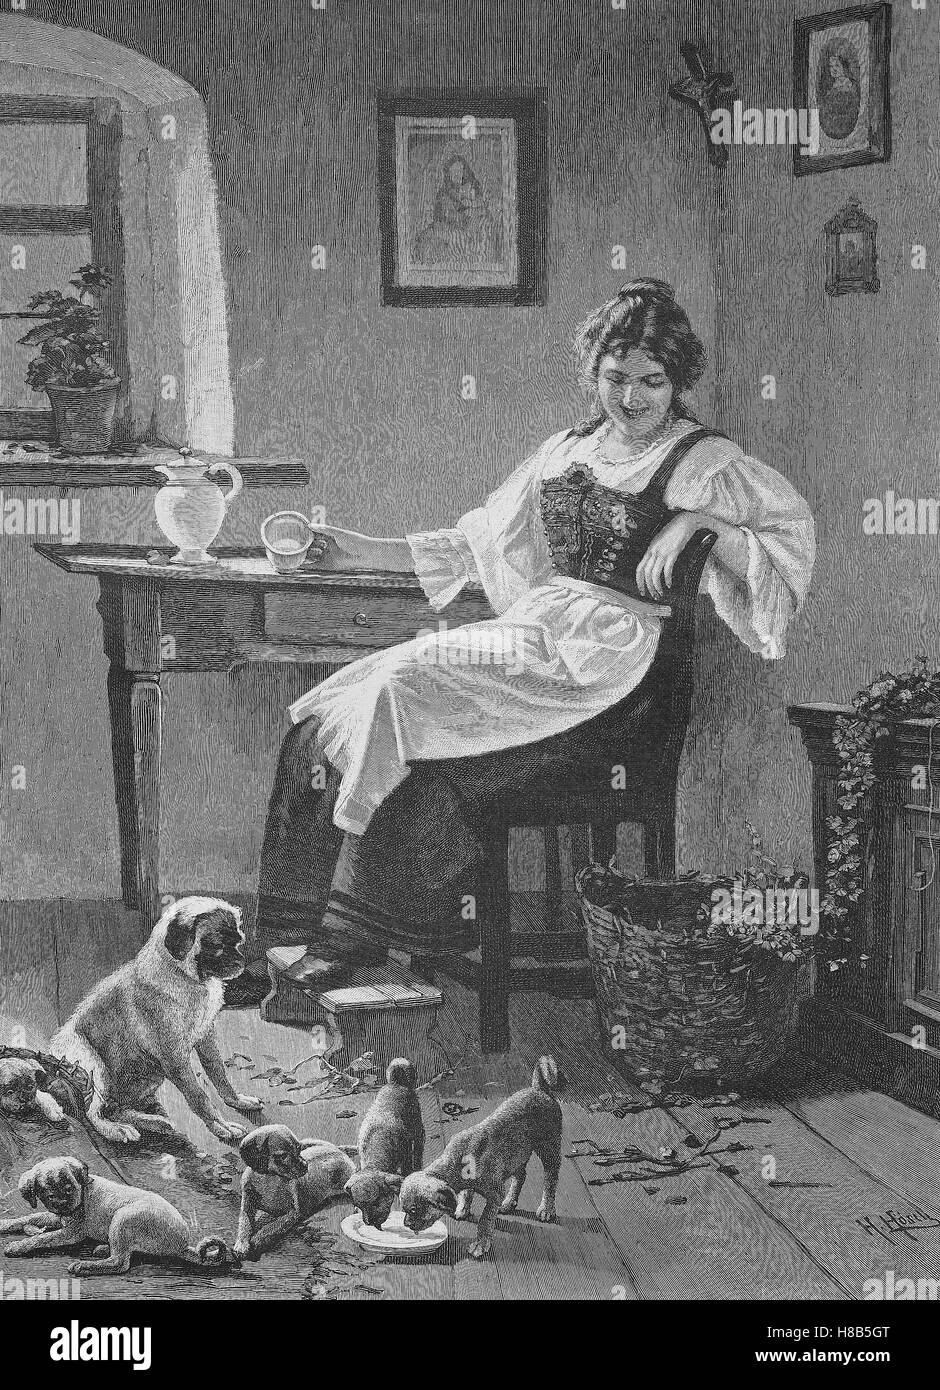 Il cane domestico ha molti cuccioli, casalinga ha dato per il cane latte, Xilografia dal 1892 Foto Stock